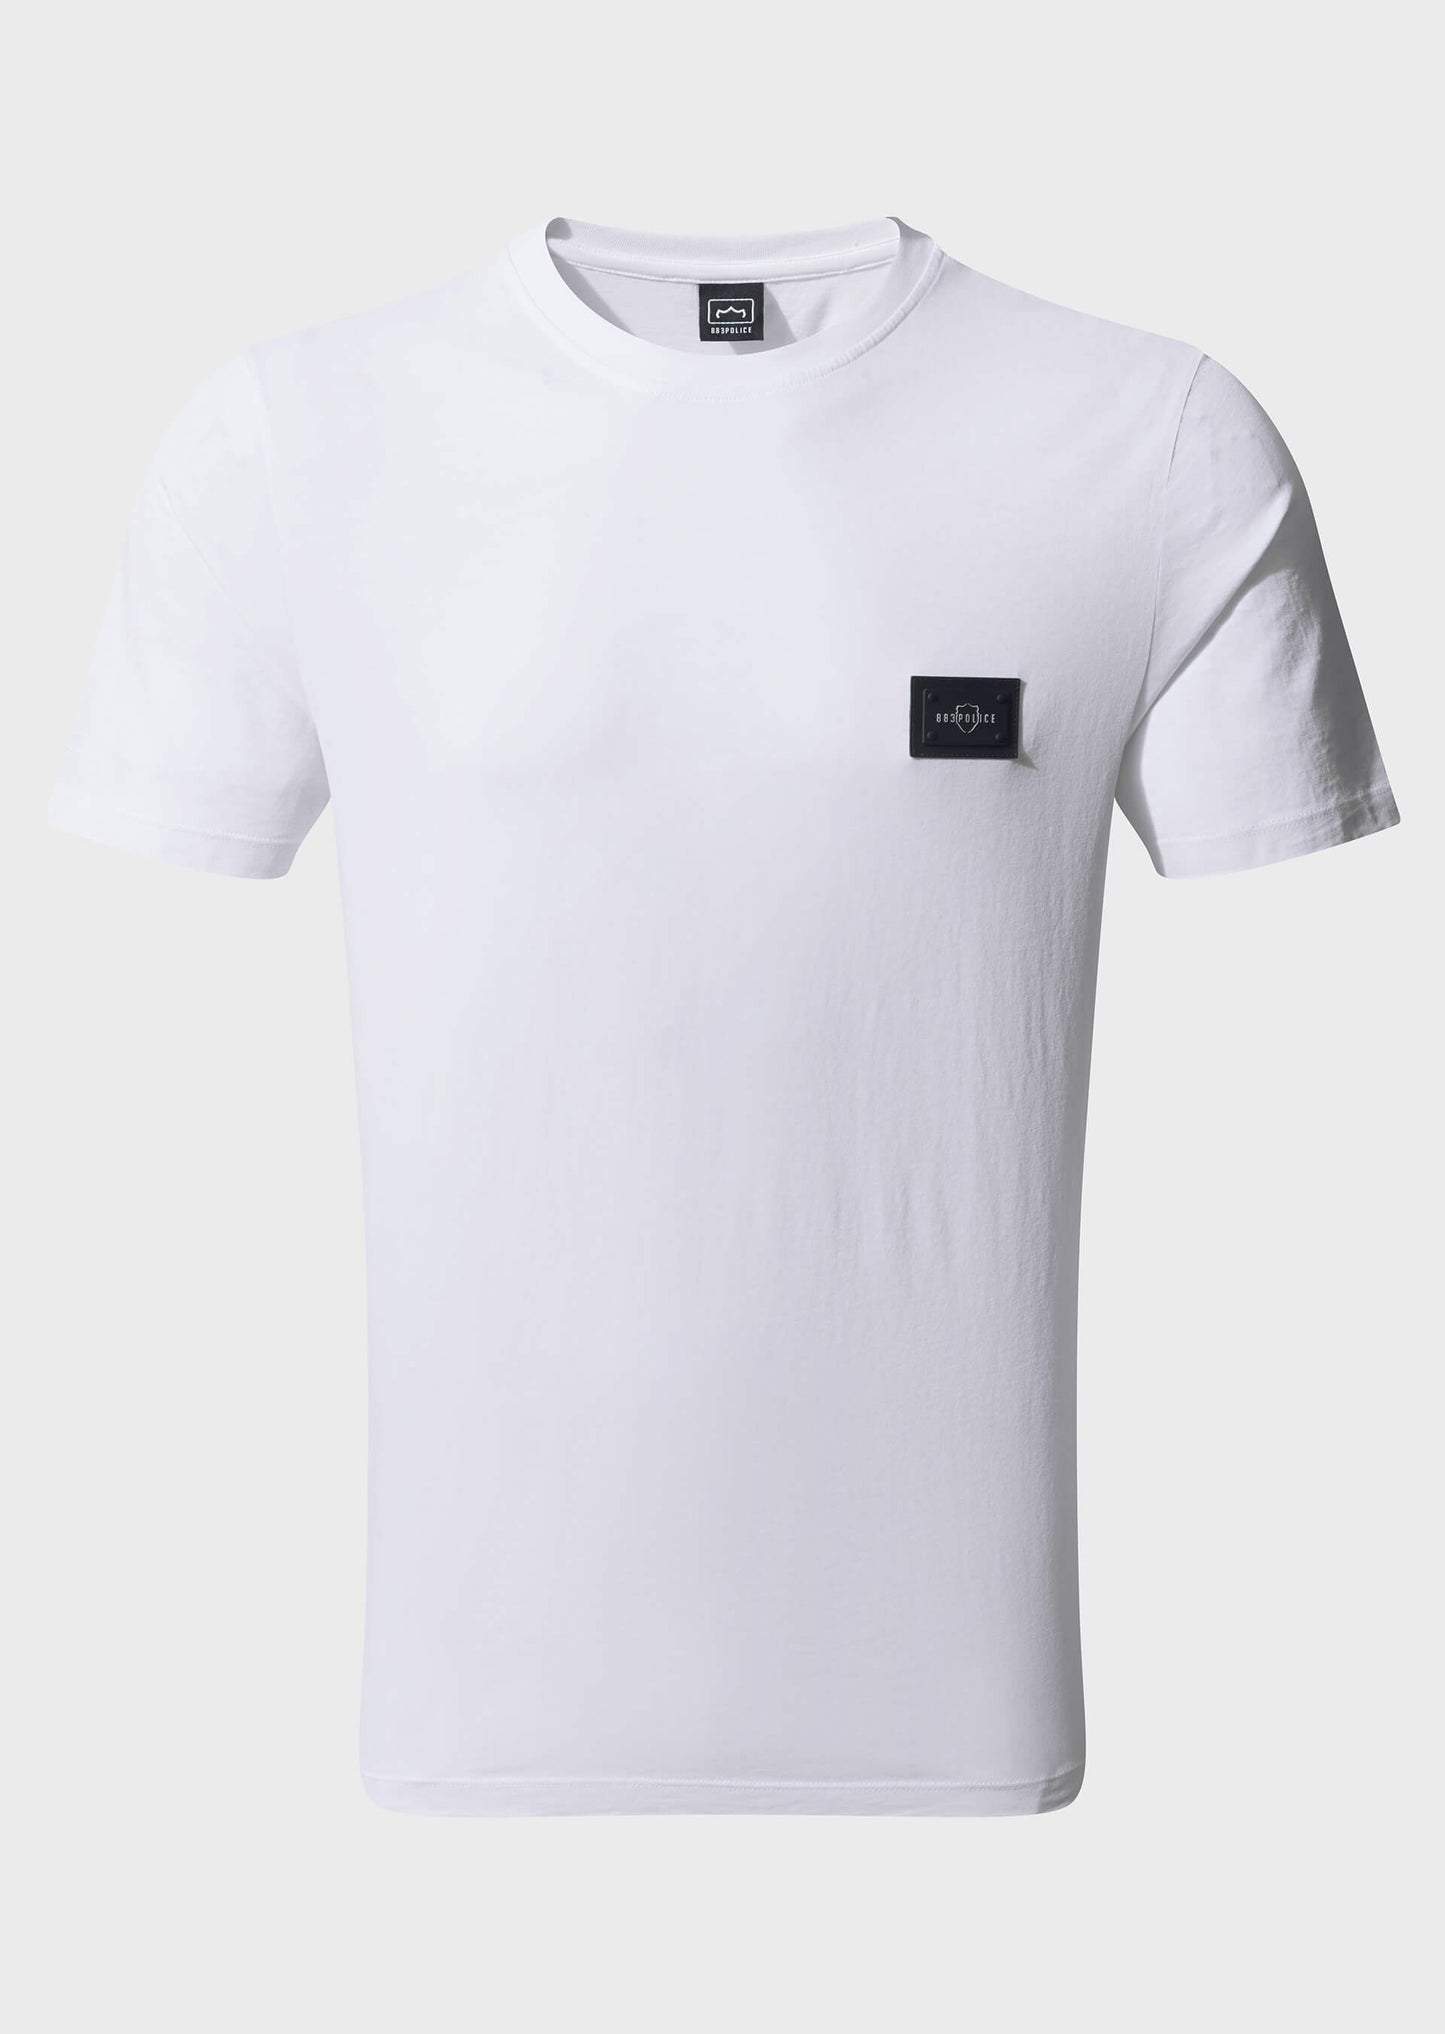 Yexley White T Shirt